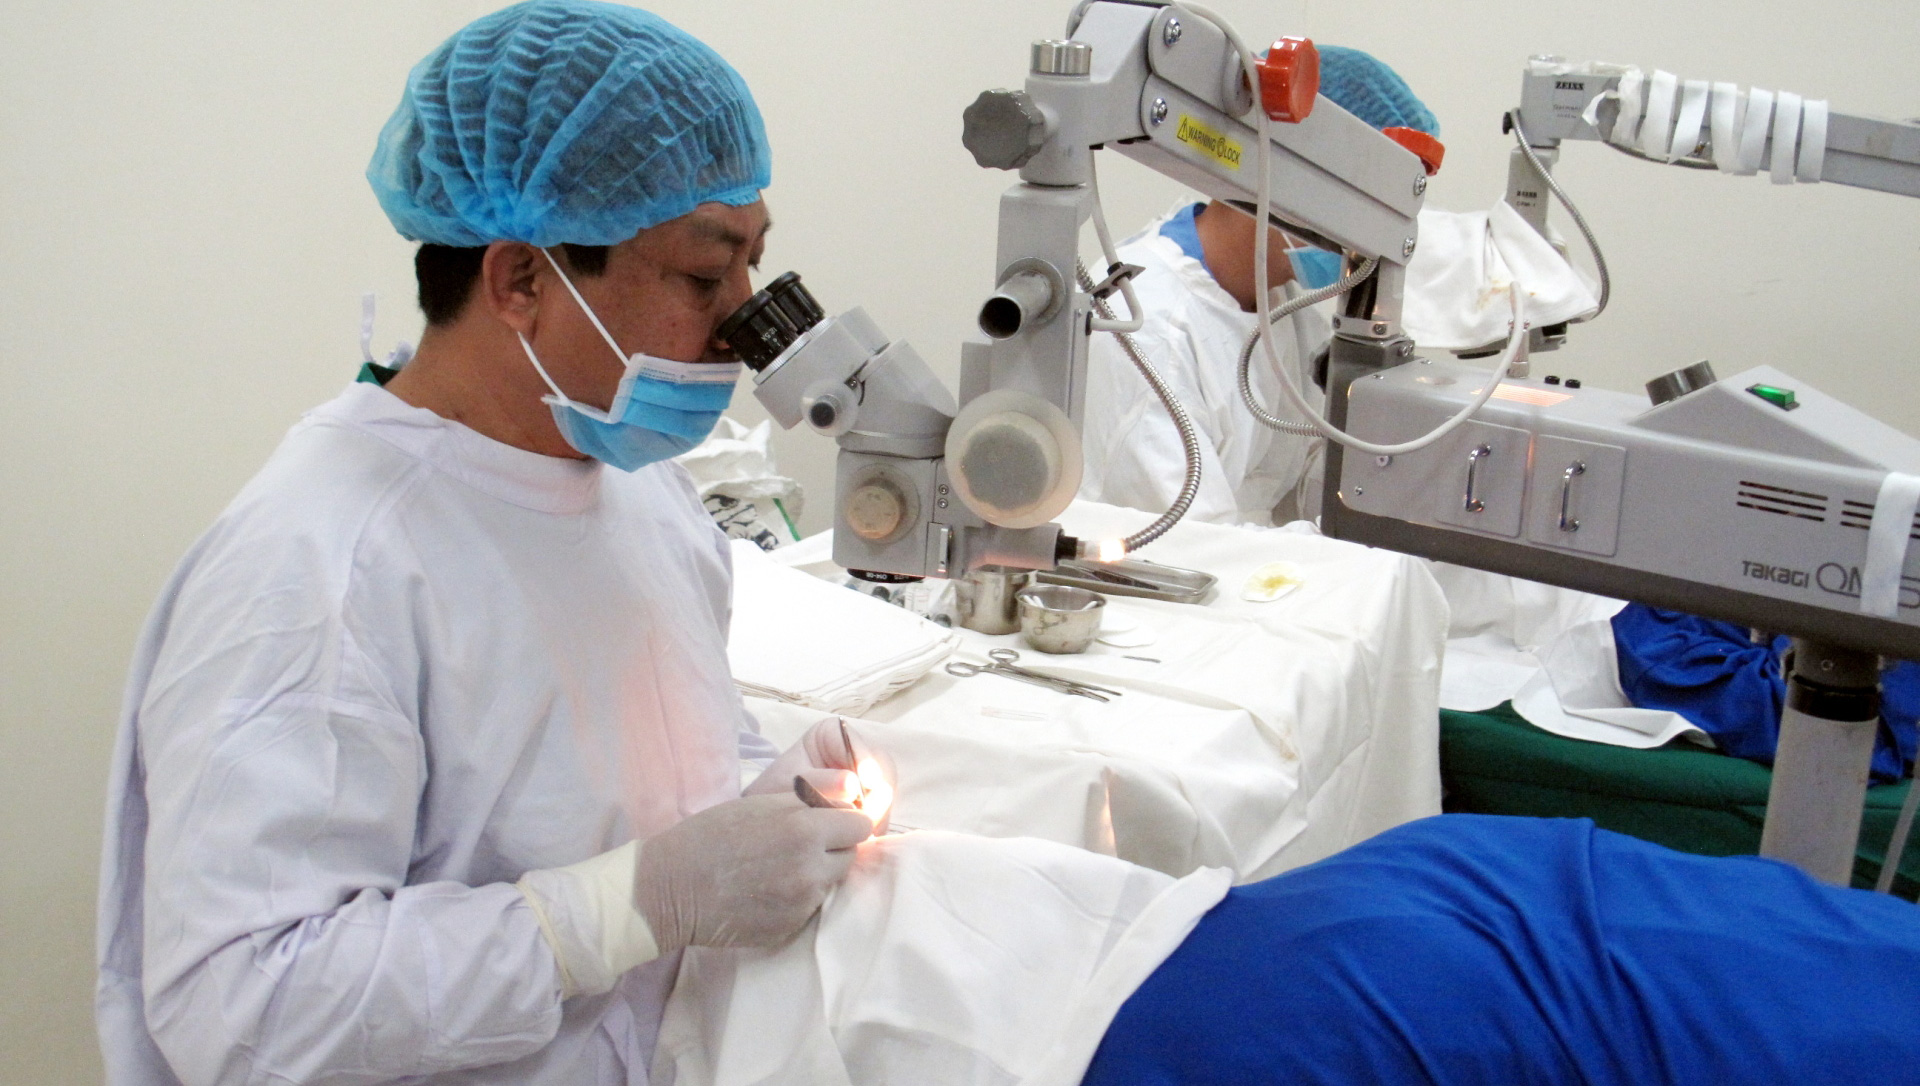 Chương trình nhân đạo này đã phẫu thuật thay thủy tinh thể miễn phí cho hơn 22.000 bệnh nhân nghèo và người cao tuổi tại Lâm Đồng